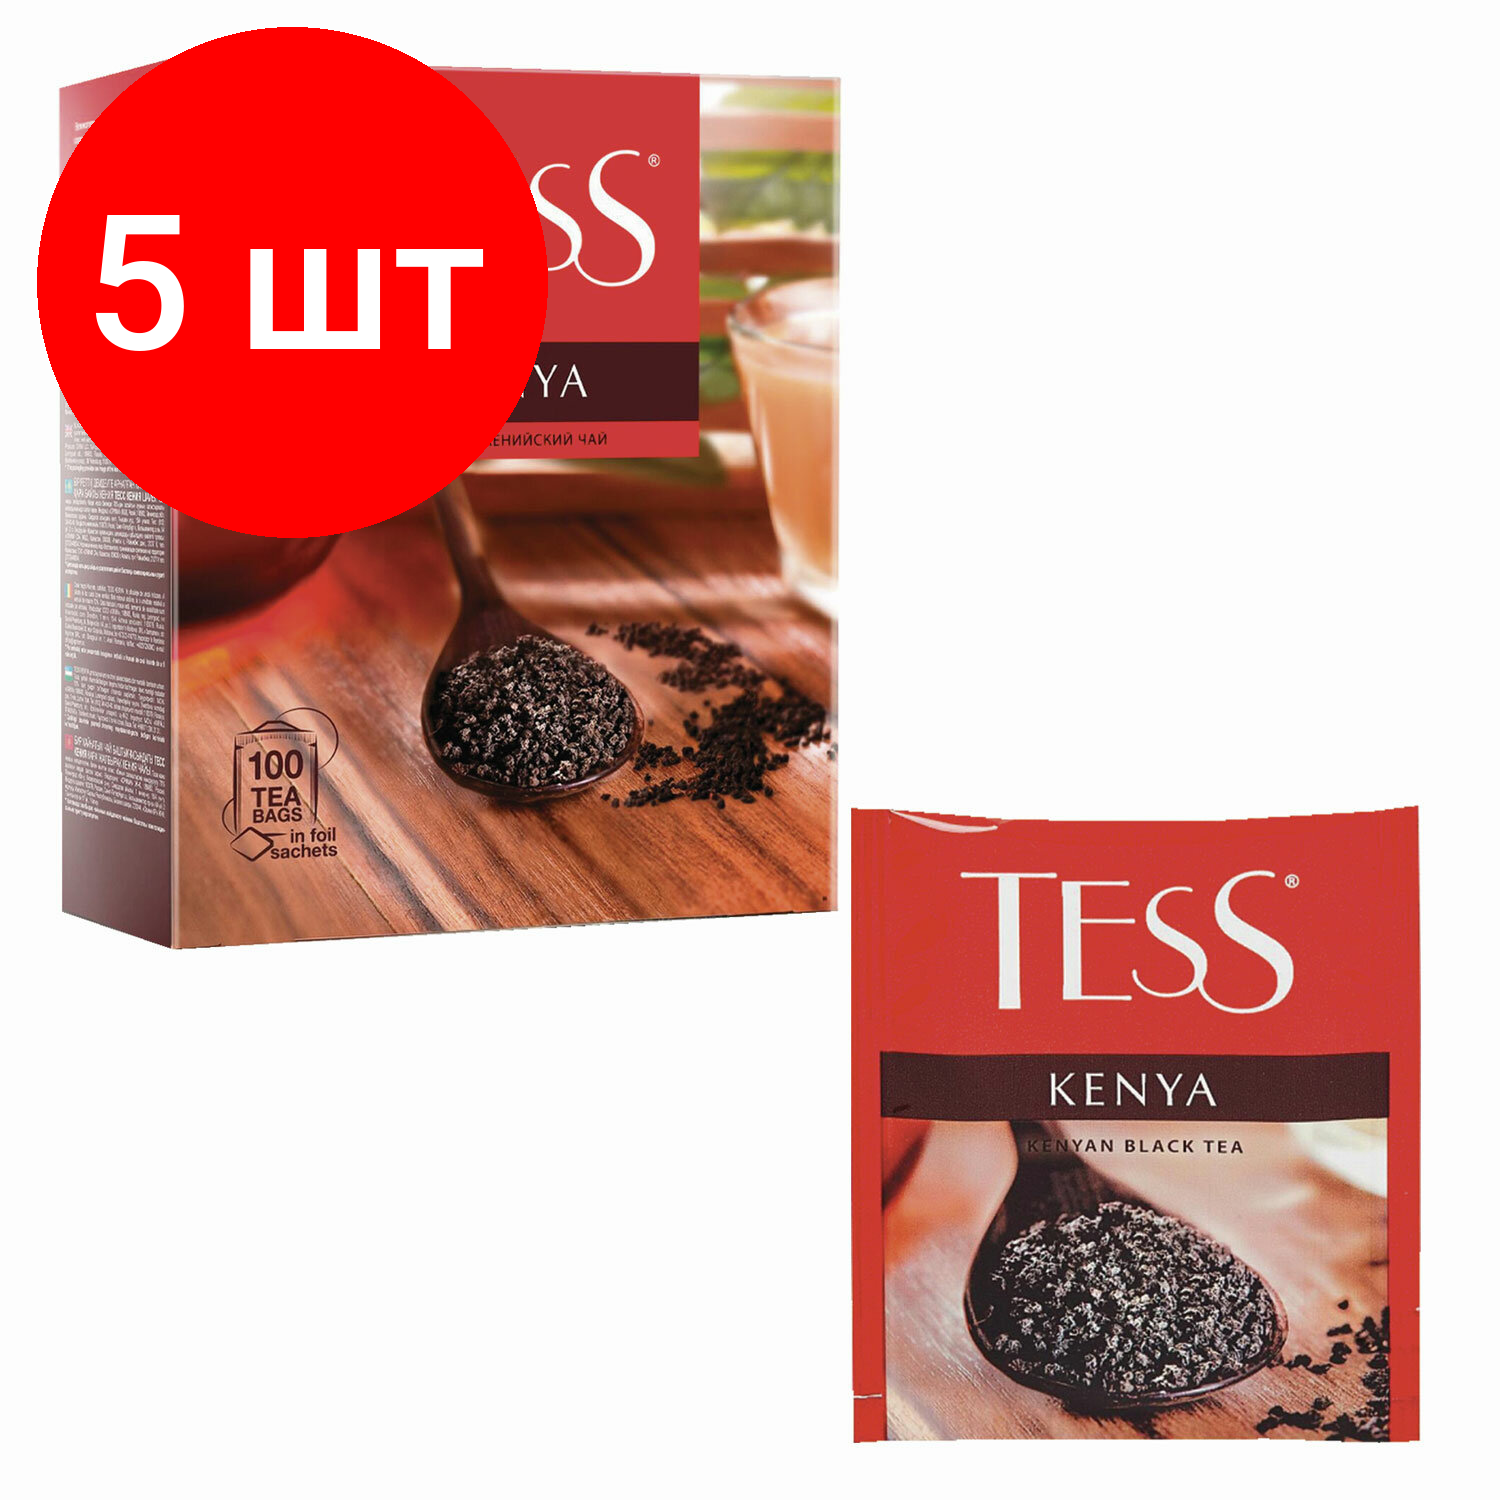 Комплект 5 шт, Чай TESS (Тесс) "Kenya", черный, 100 пакетиков в конвертах по 2 г, 1264-09